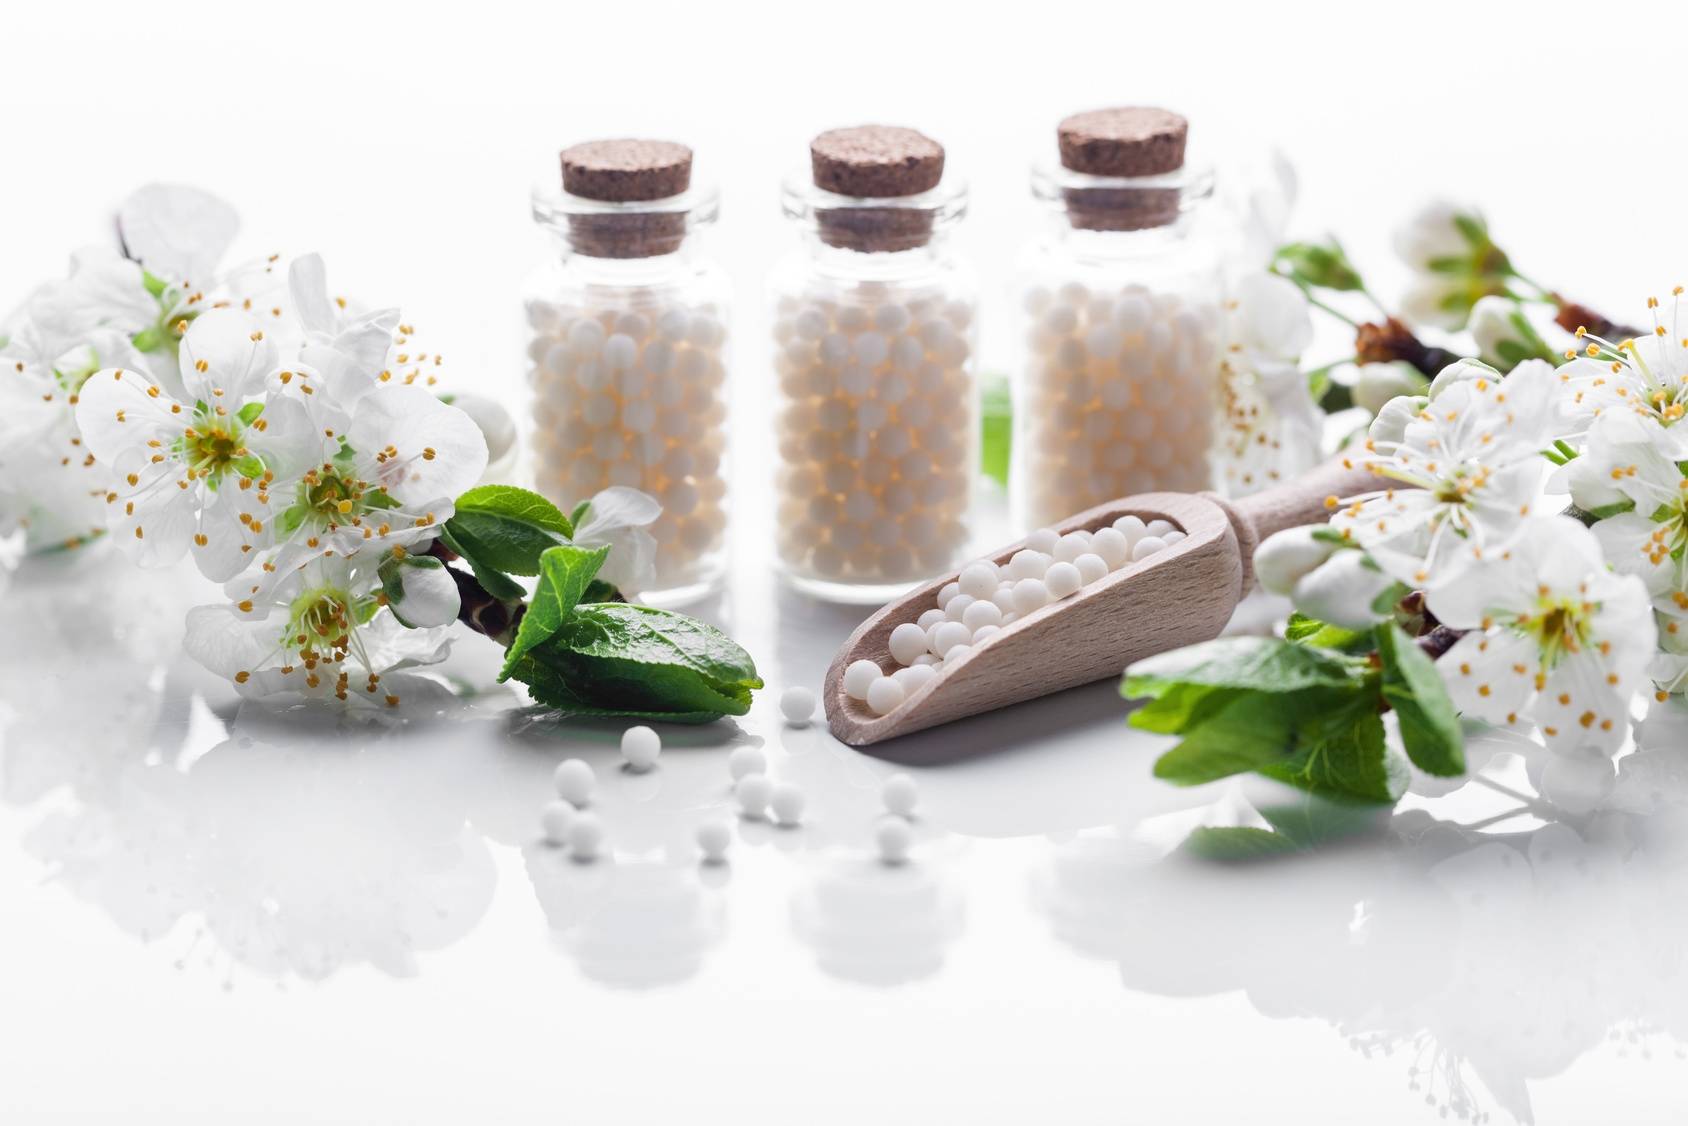 Ignatia amara - lek homeopatyczny w 3 fiolkach stoi na białym blacie obok białych kwiatów jabłoni.